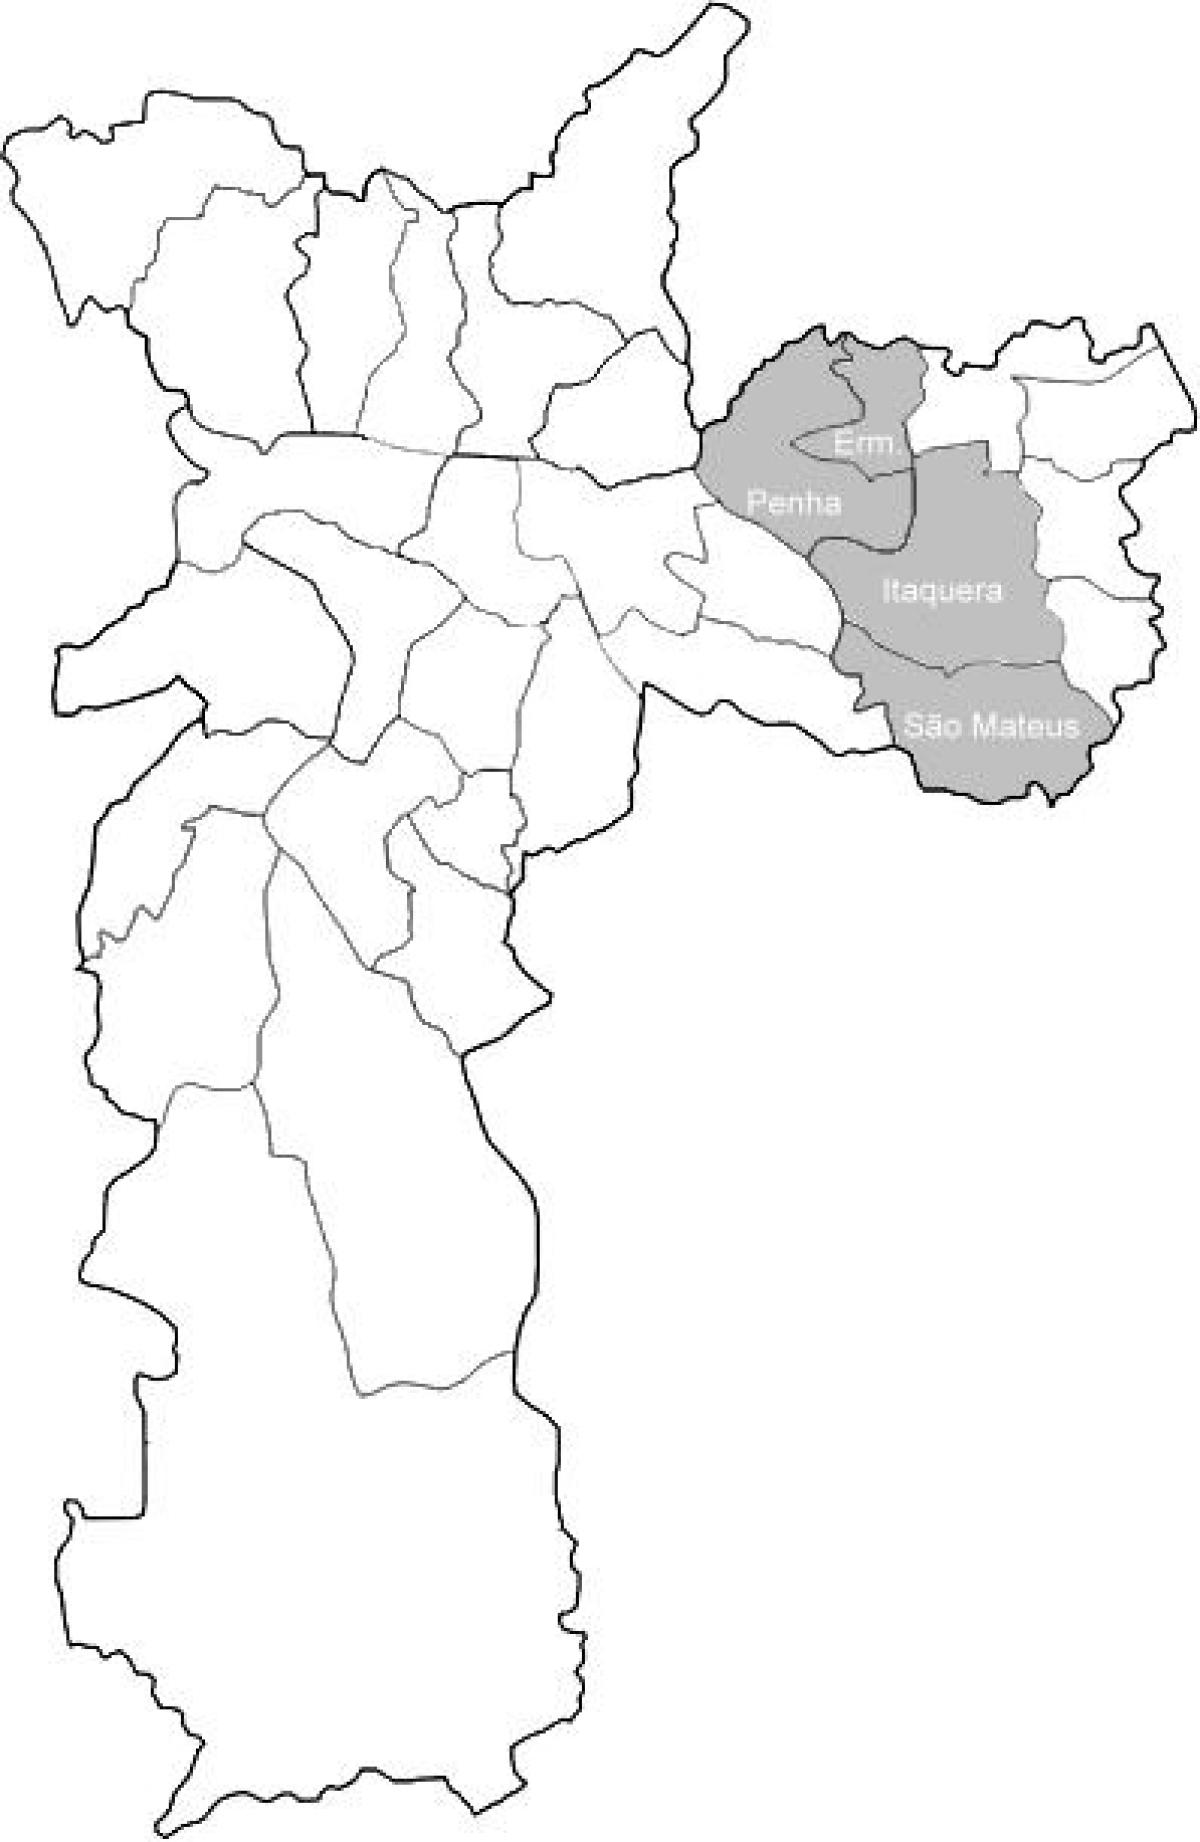 Mapa da zona Leste do 1 de São Paulo